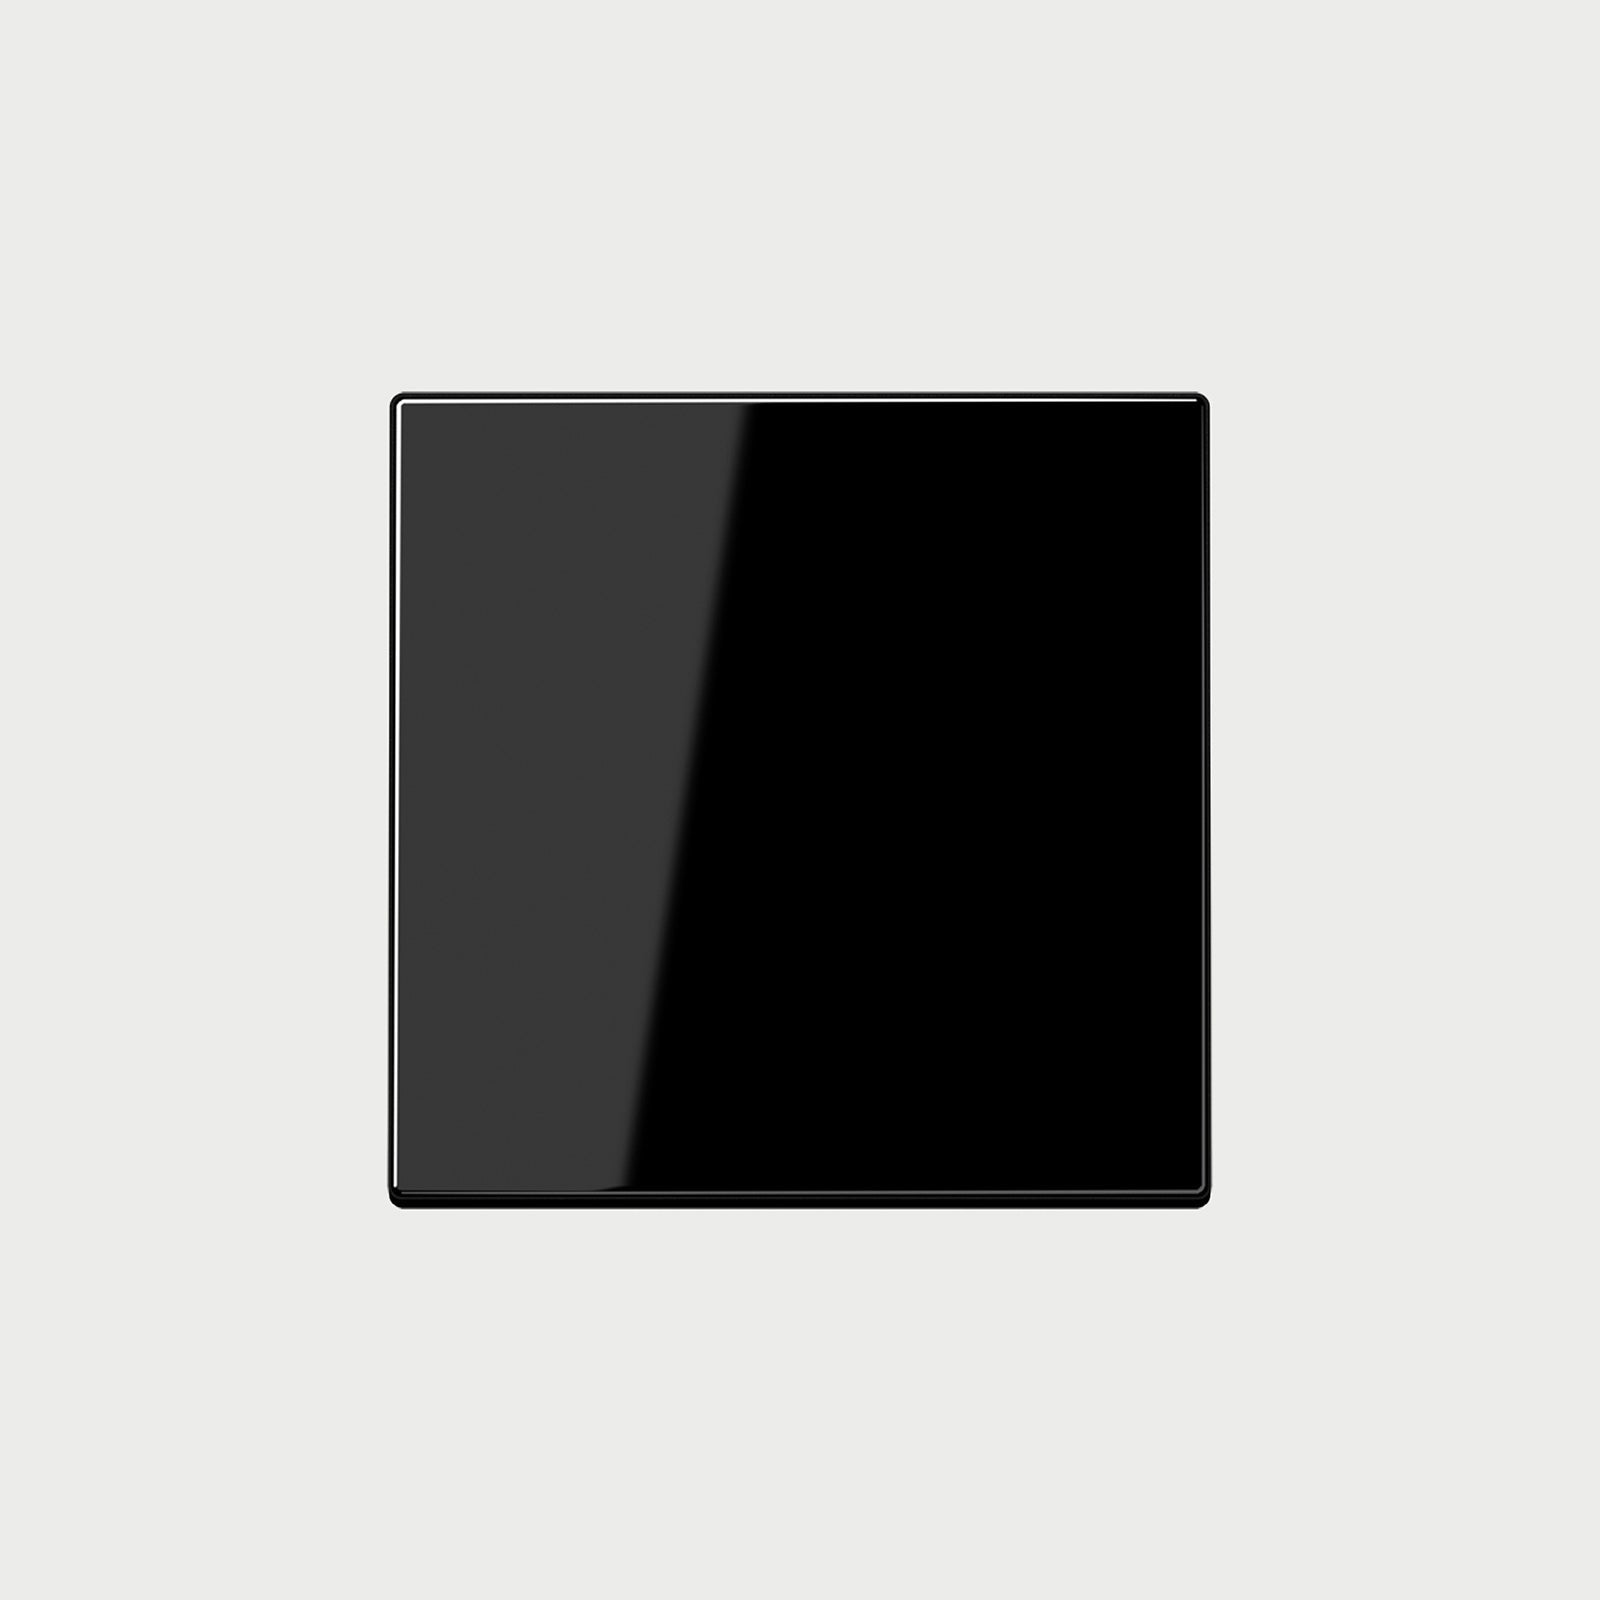 Ls990 (Plastic) Black Cover